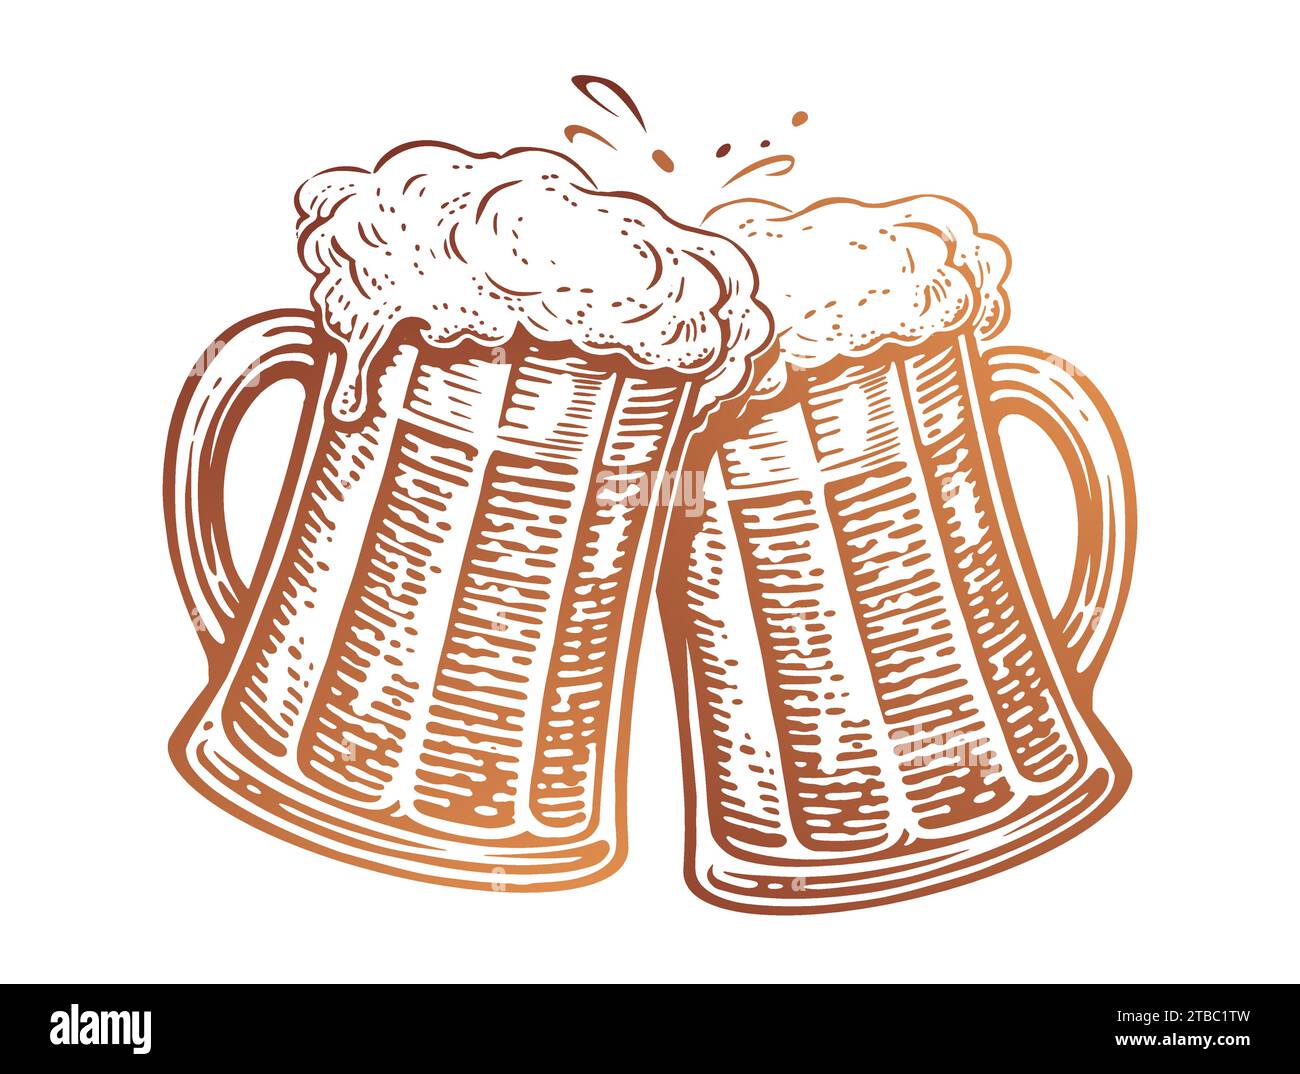 Brindisi, due tazze da birra. Bicchieri in vetro con un sacco di birra e spruzzi di schiuma. Illustrazione vettoriale Illustrazione Vettoriale